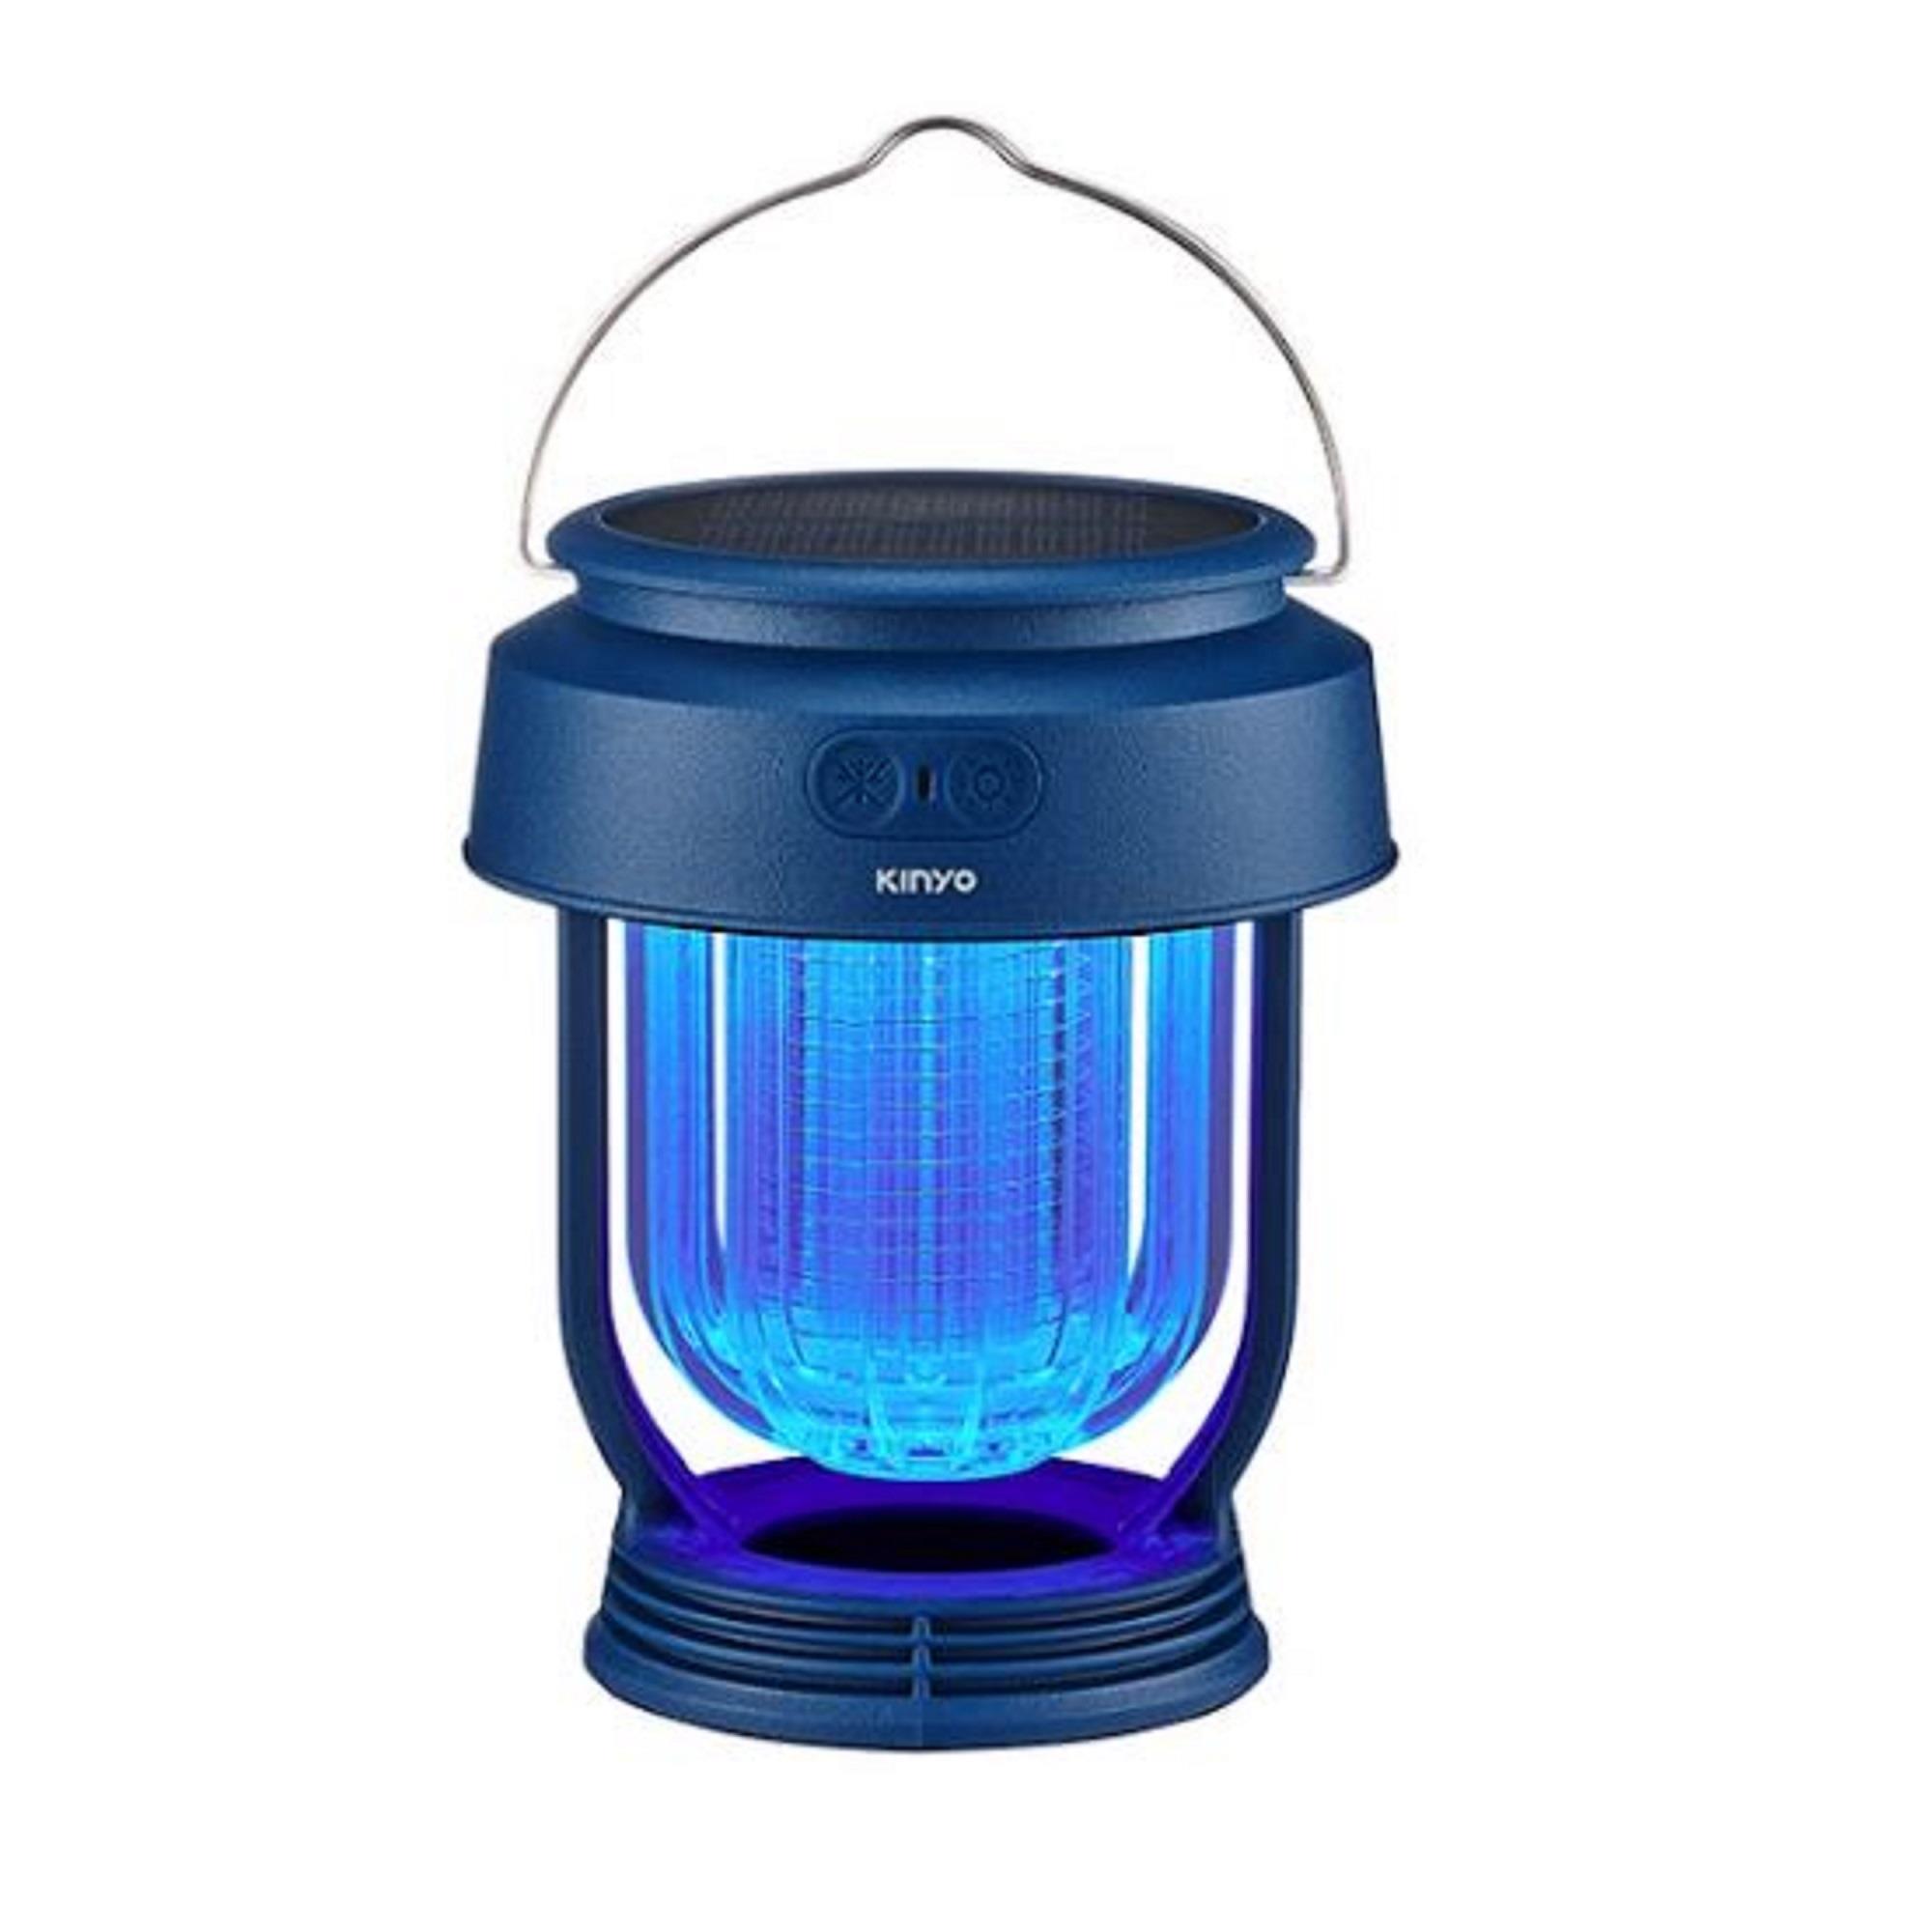 【KINYO】無段式太陽能捕蚊燈-藍((KL-6054-藍))